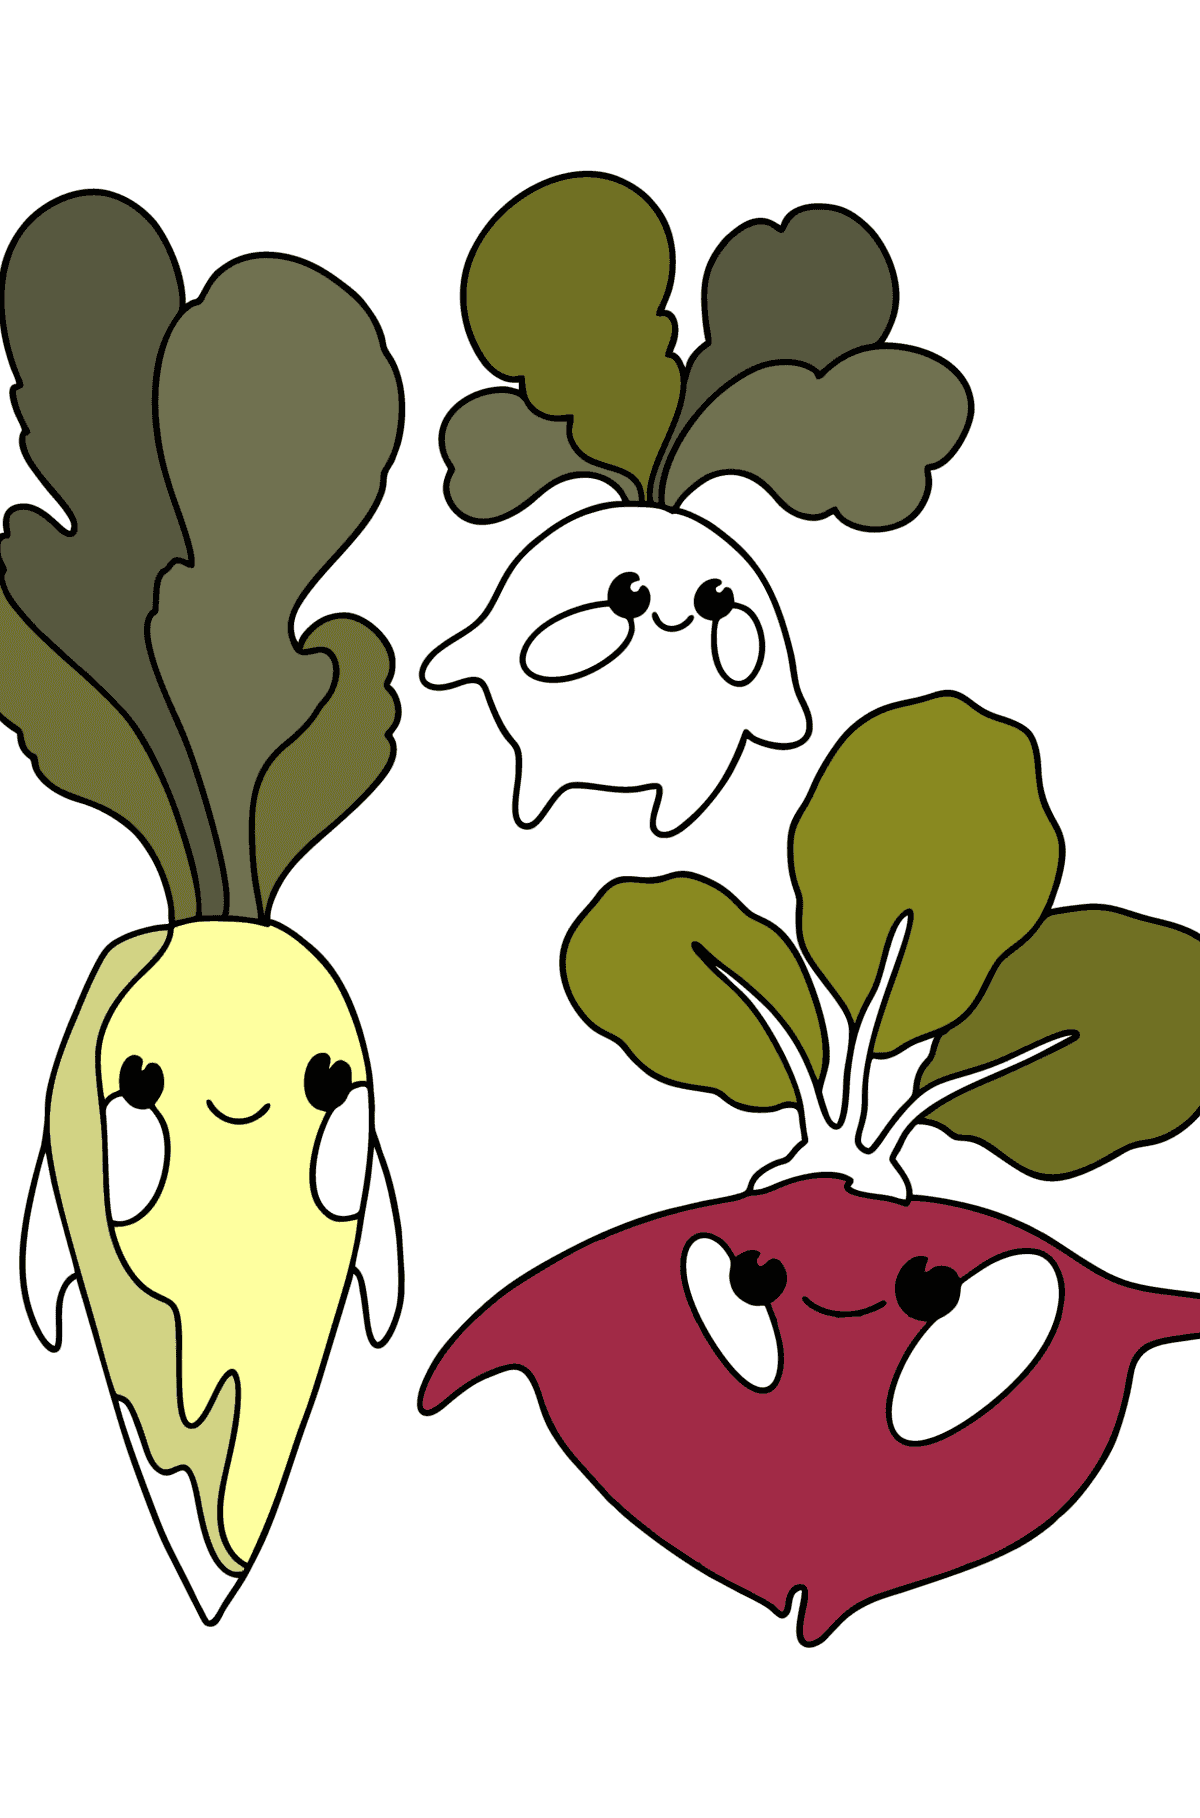 Gemüse (Rettich, Rettich, Rüben) ausmalbild - Malvorlagen für Kinder